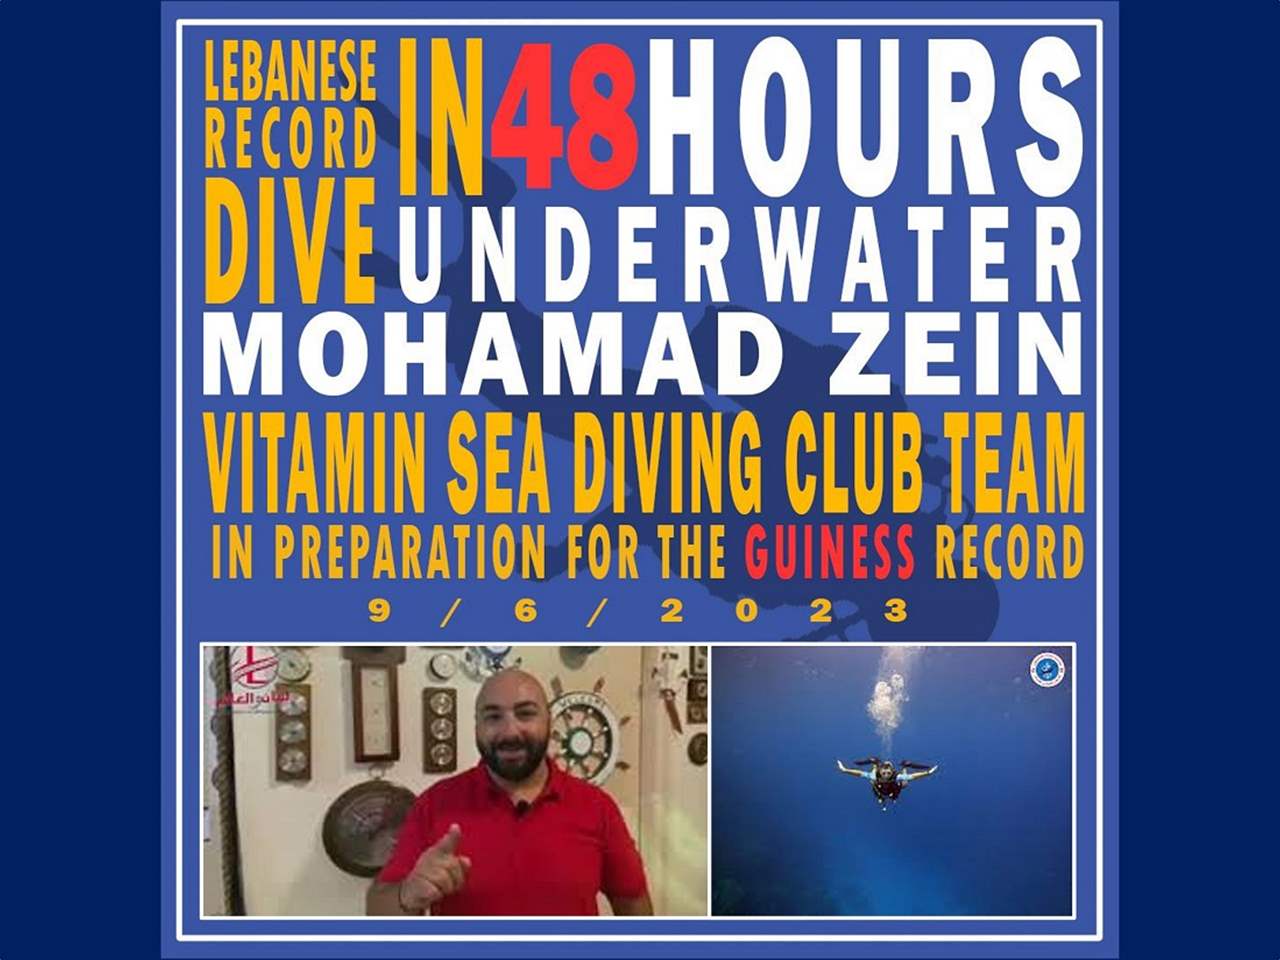 محمد زين يسعى الى رقم عالمي في الغوص من بحر عين المريسة